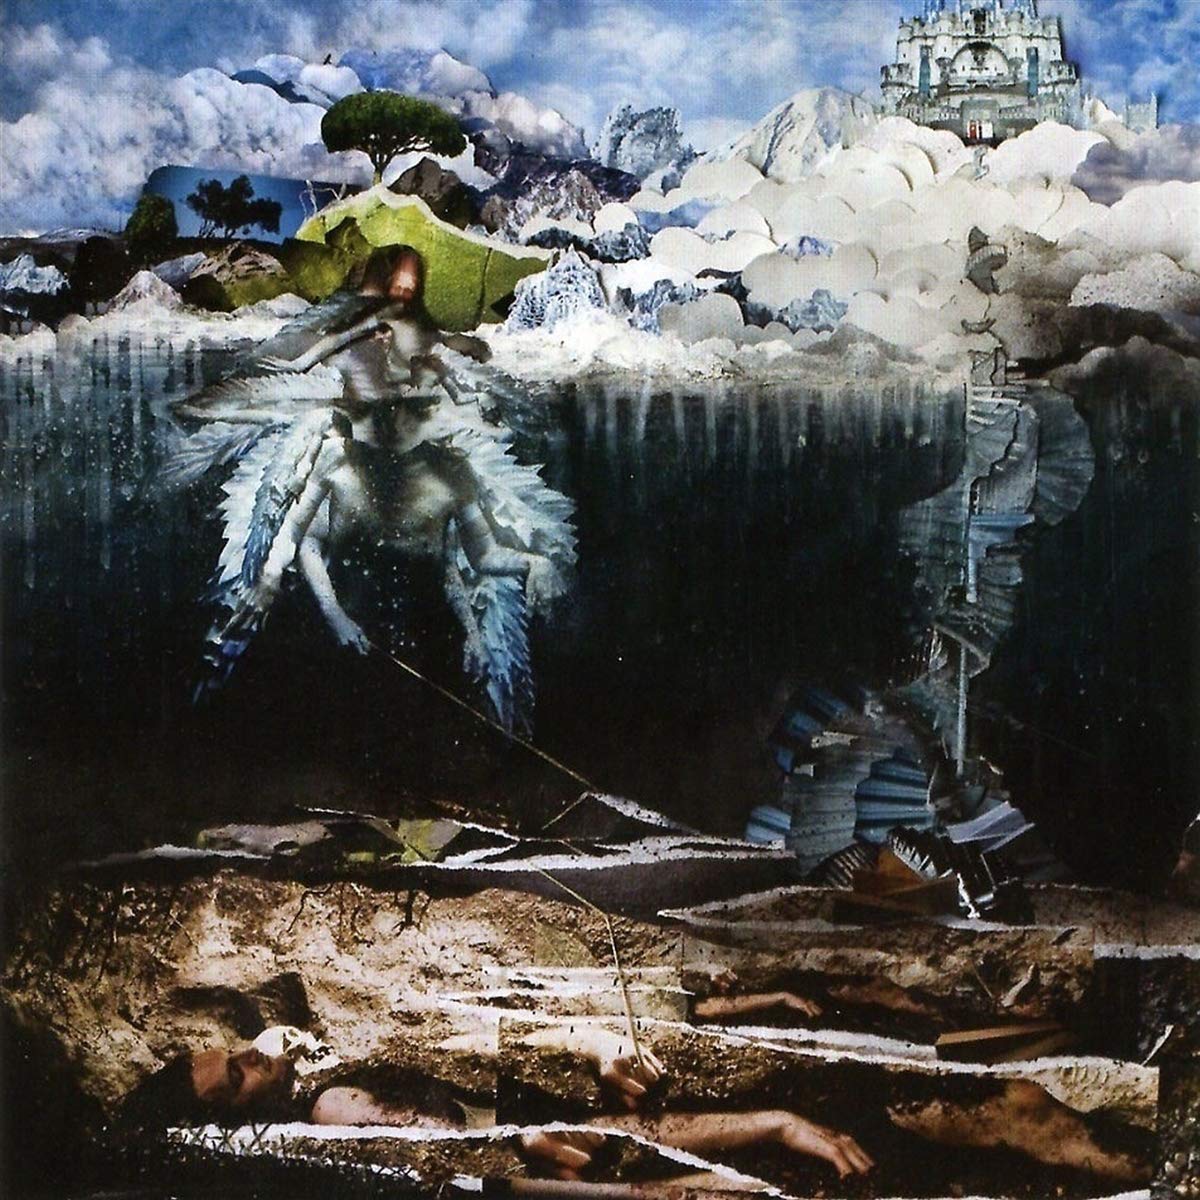 Vinile John Frusciante - The Empyrean (10 Year Anniverssary Repress) NUOVO SIGILLATO, EDIZIONE DEL 27/03/2020 SUBITO DISPONIBILE